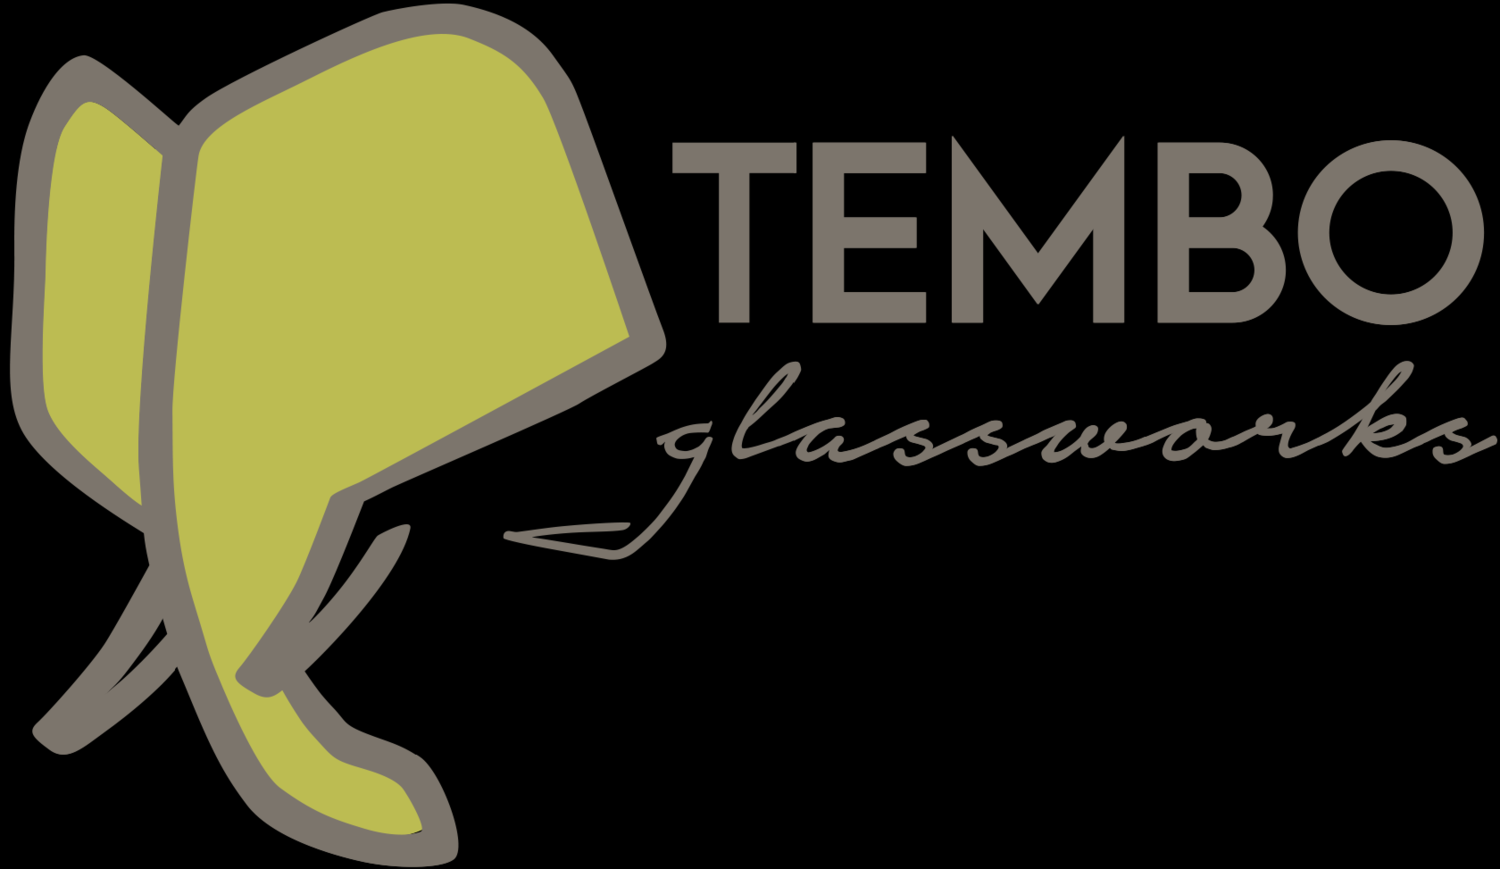 Tembo Glassworks